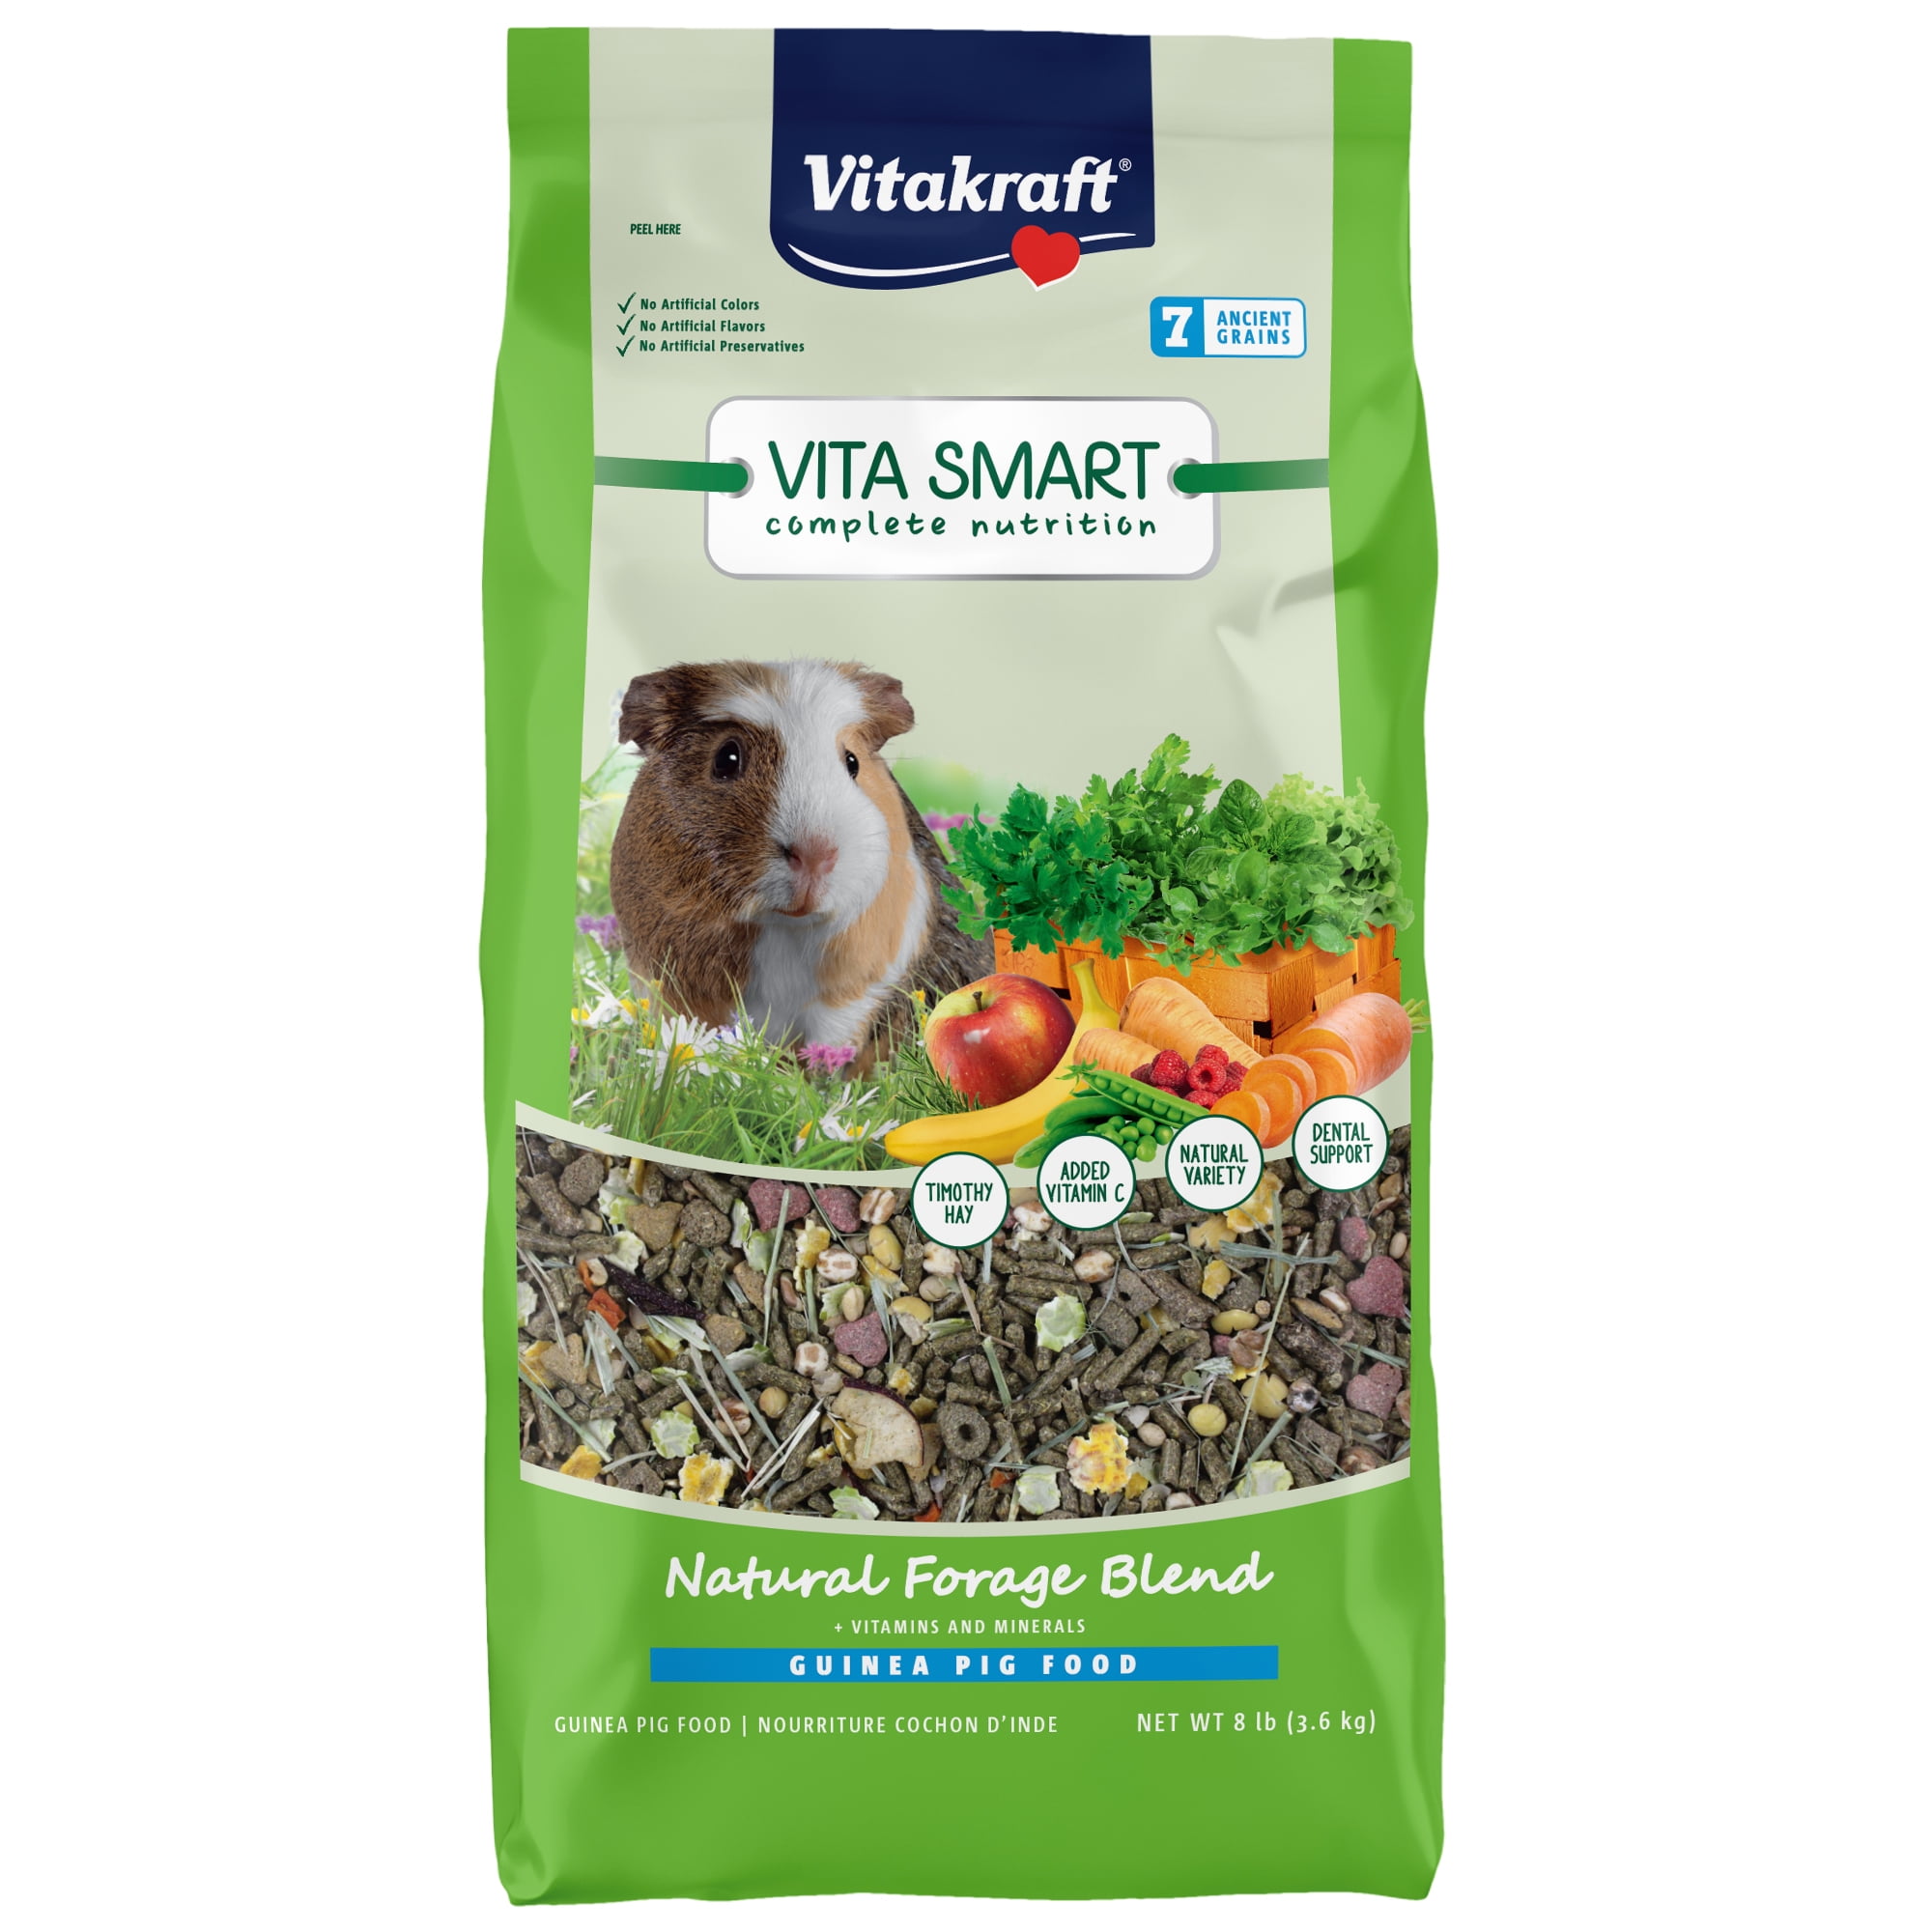 Vitakraft Vita Smart Guinea Pig Food Premium Fortified Blend, lb 